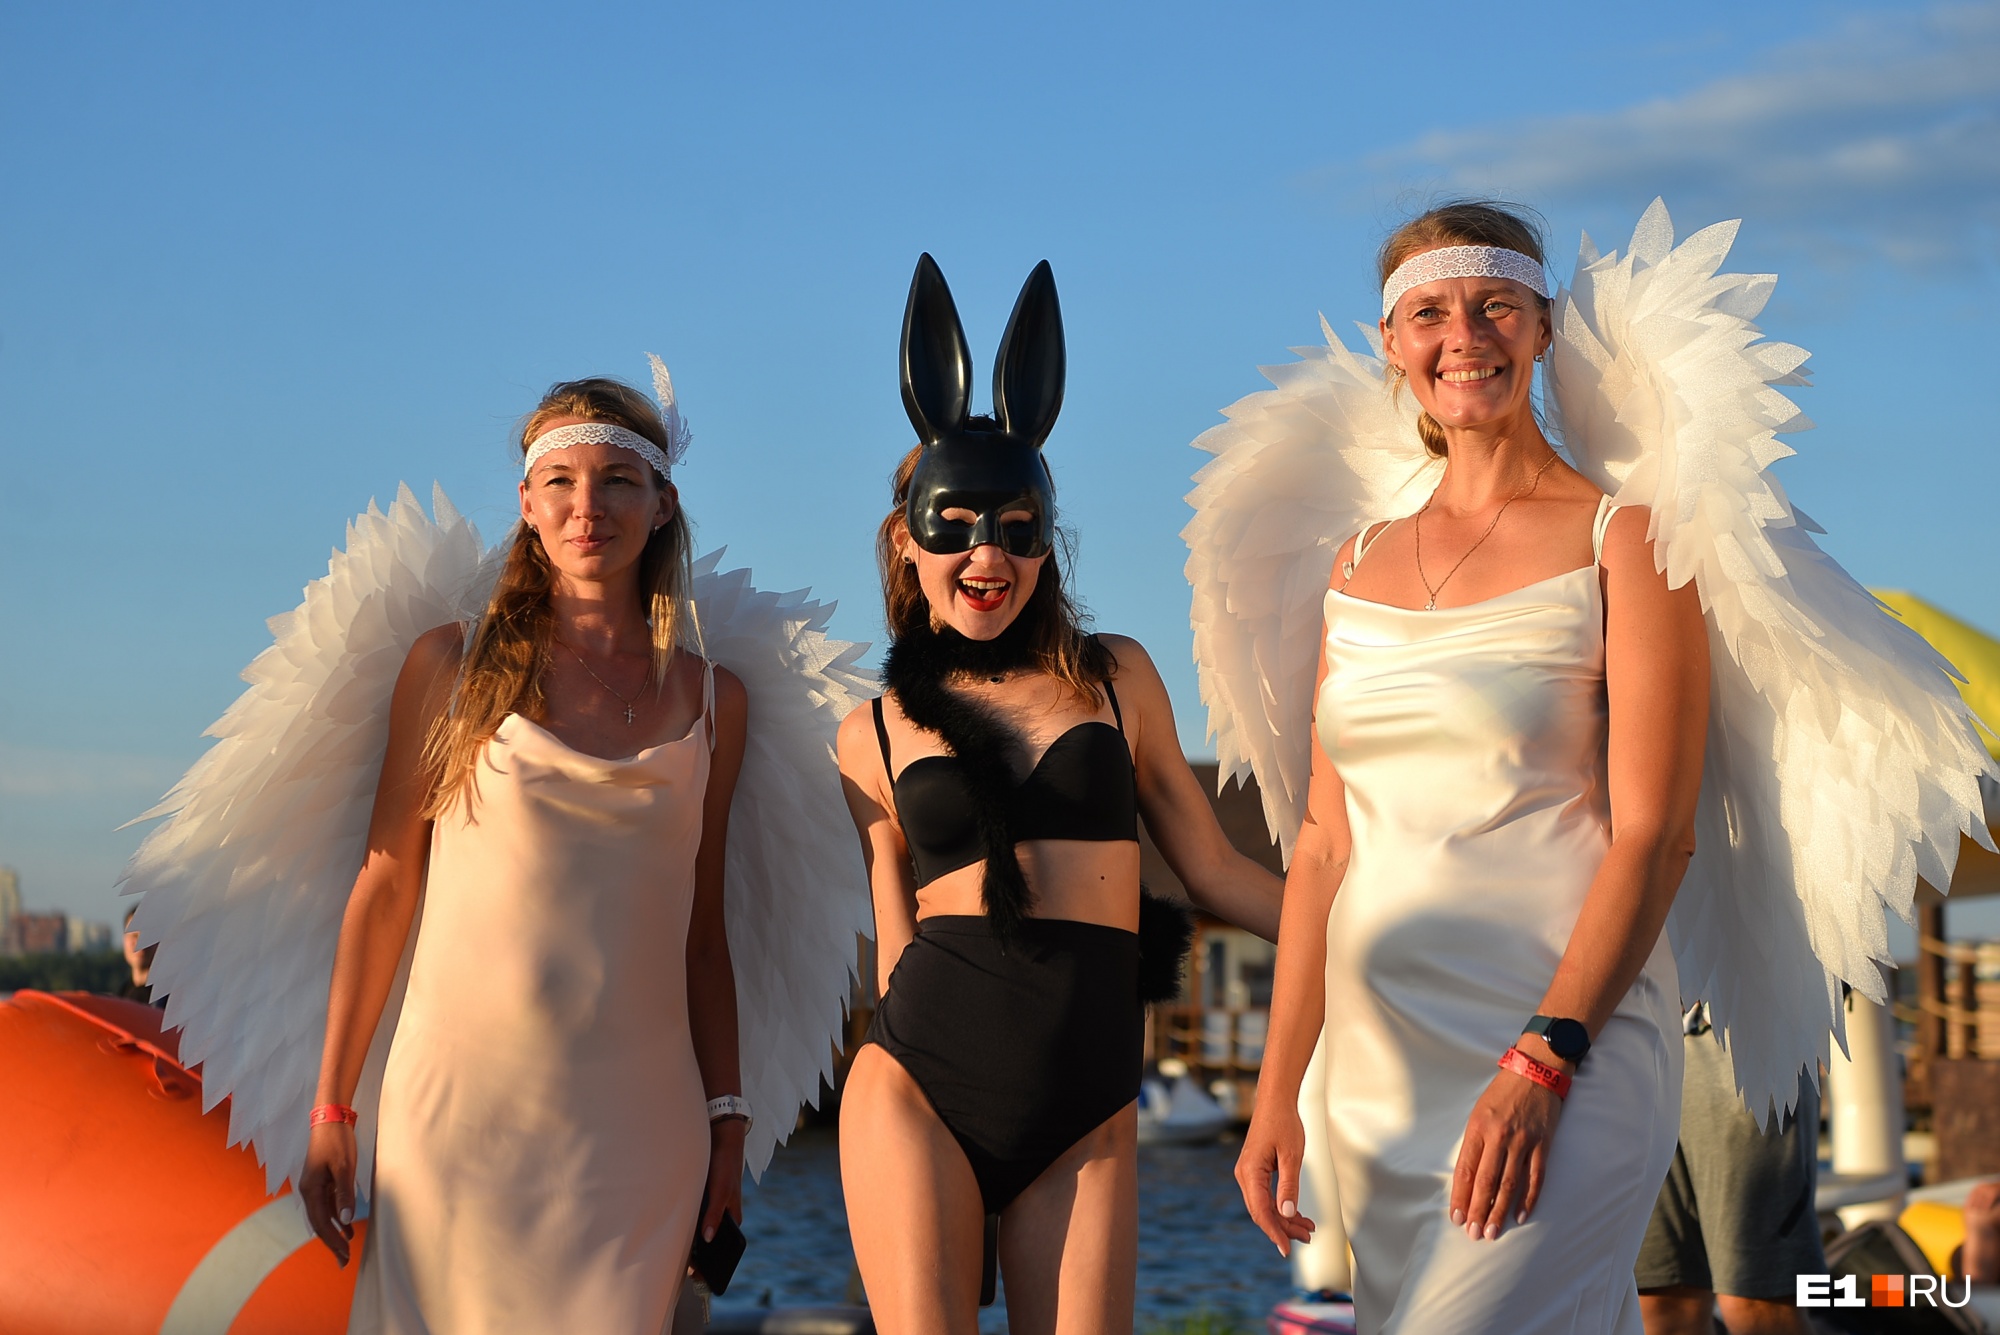 Екатеринбуржцы в безумных нарядах устроили заплыв на Визовскому пруду: 30 ярких фото